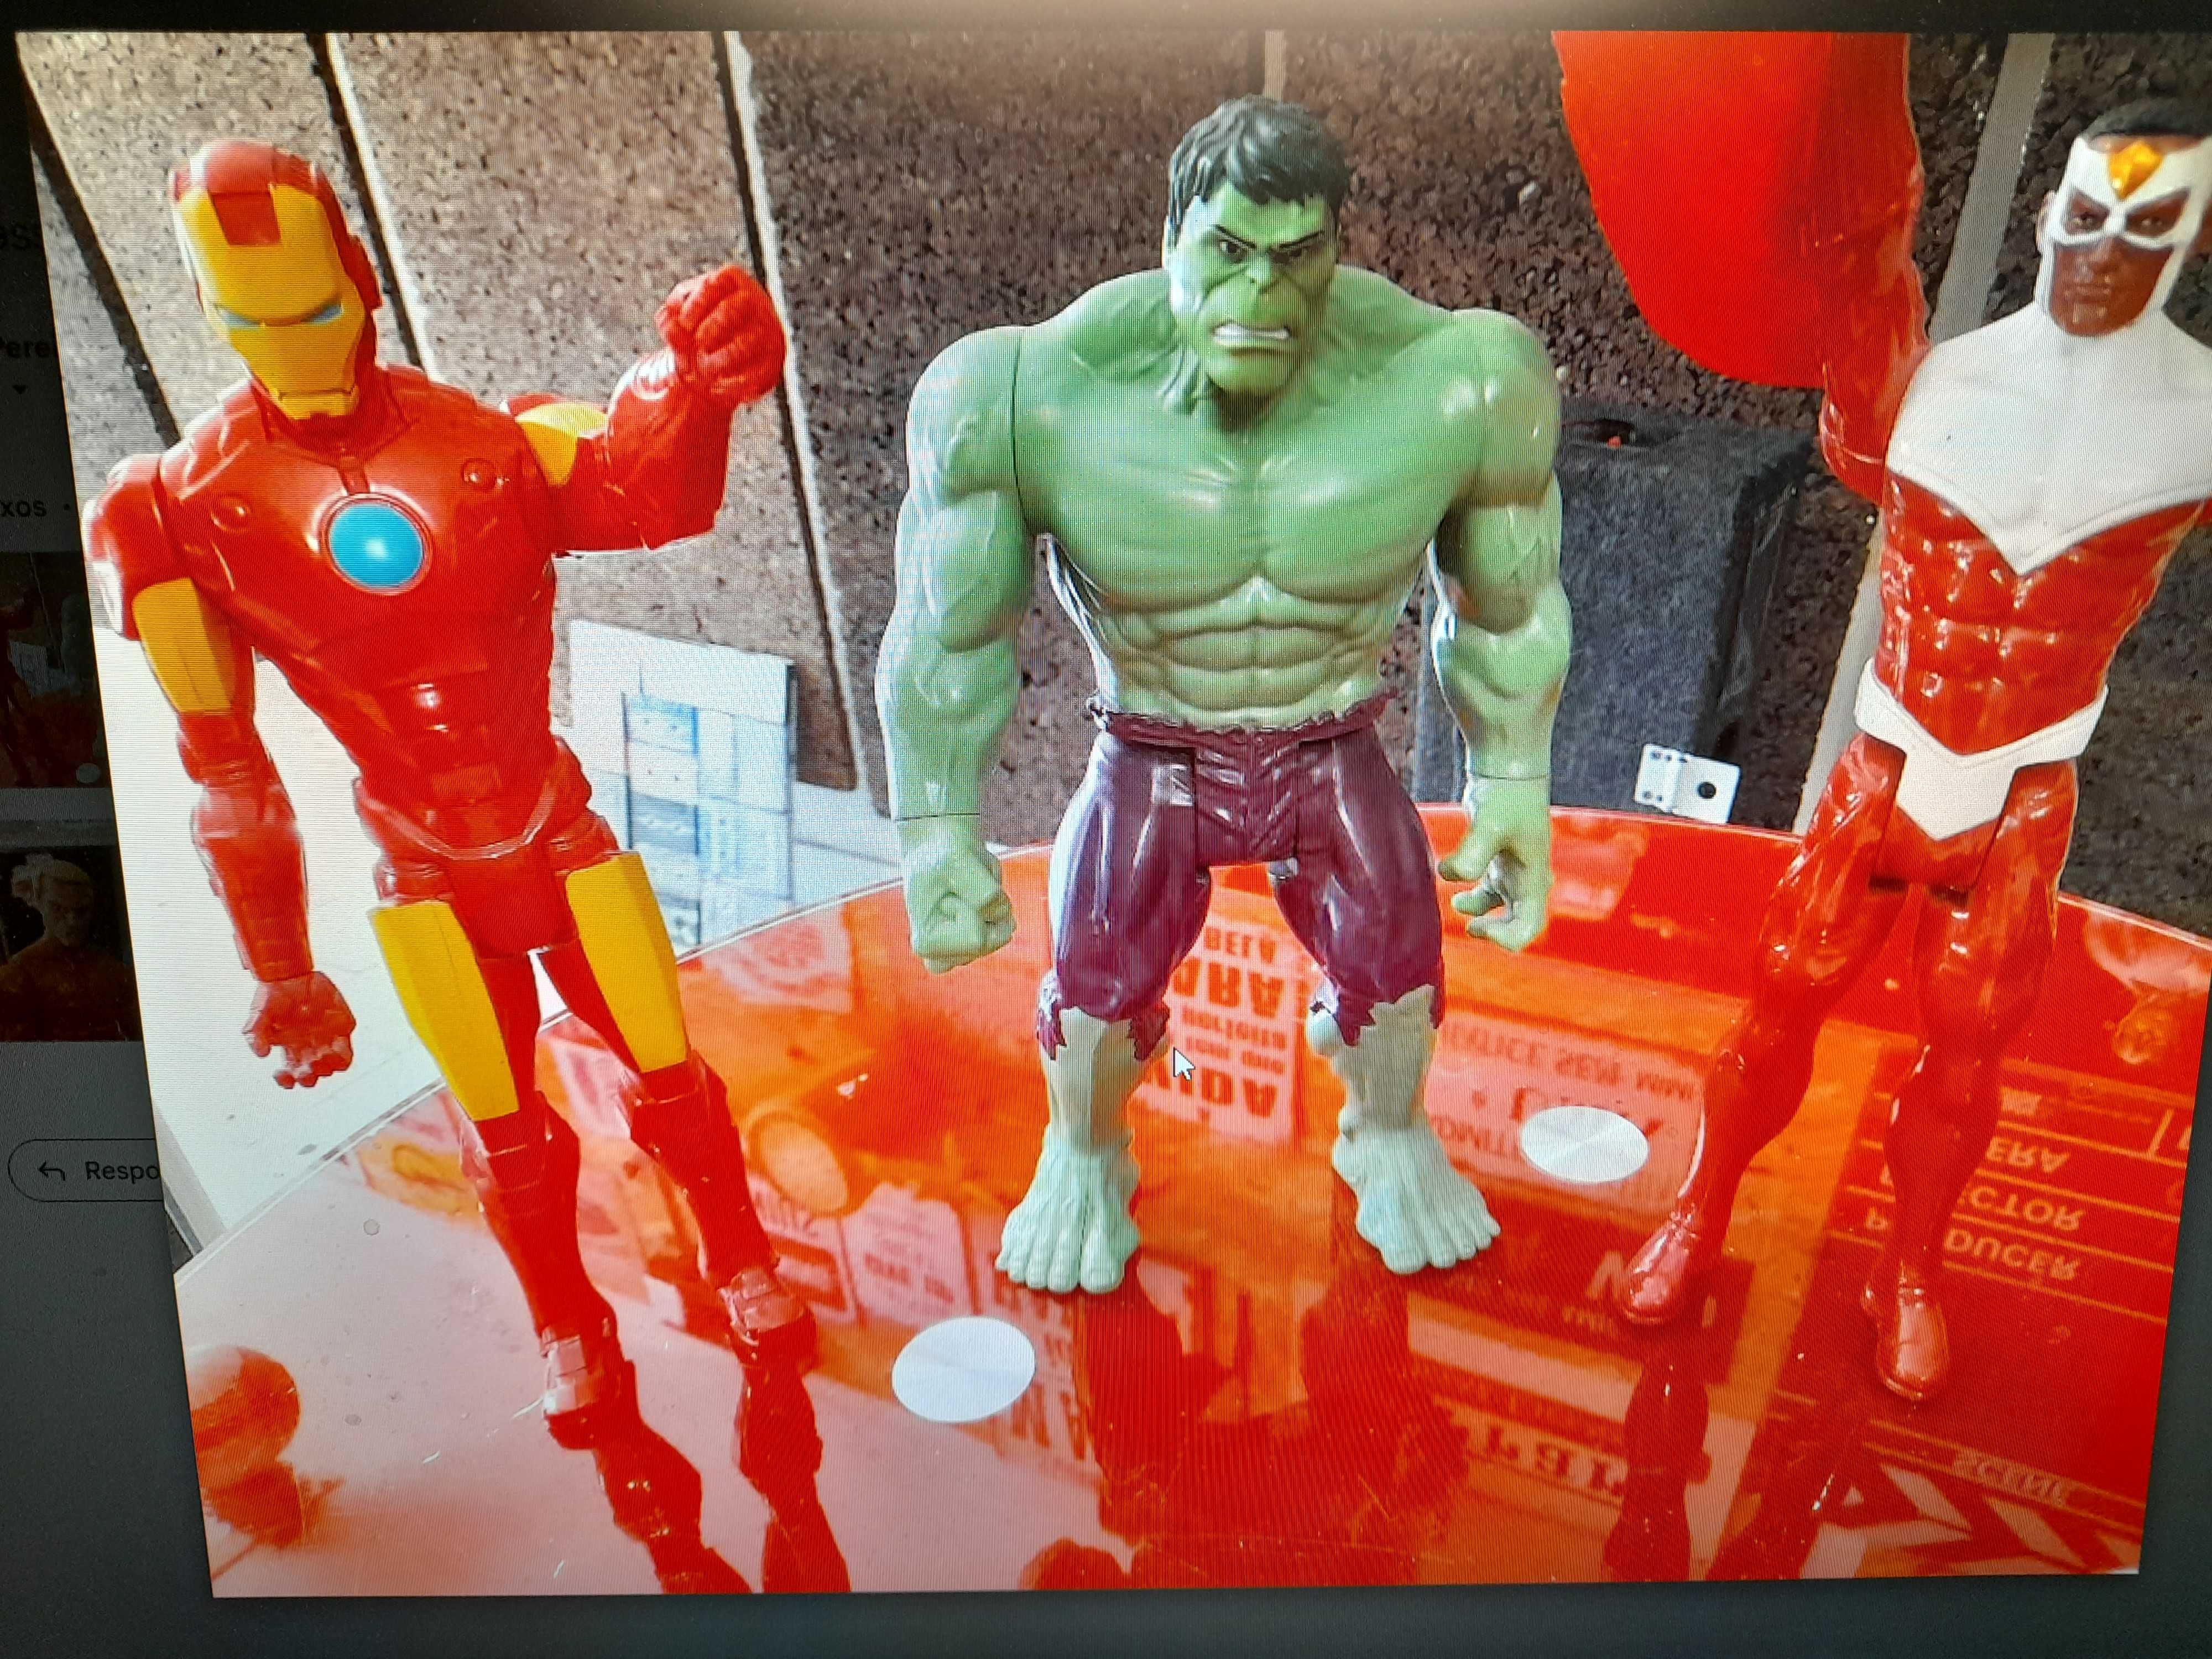 Figuras super -heróis Marvel e Comics 30cm